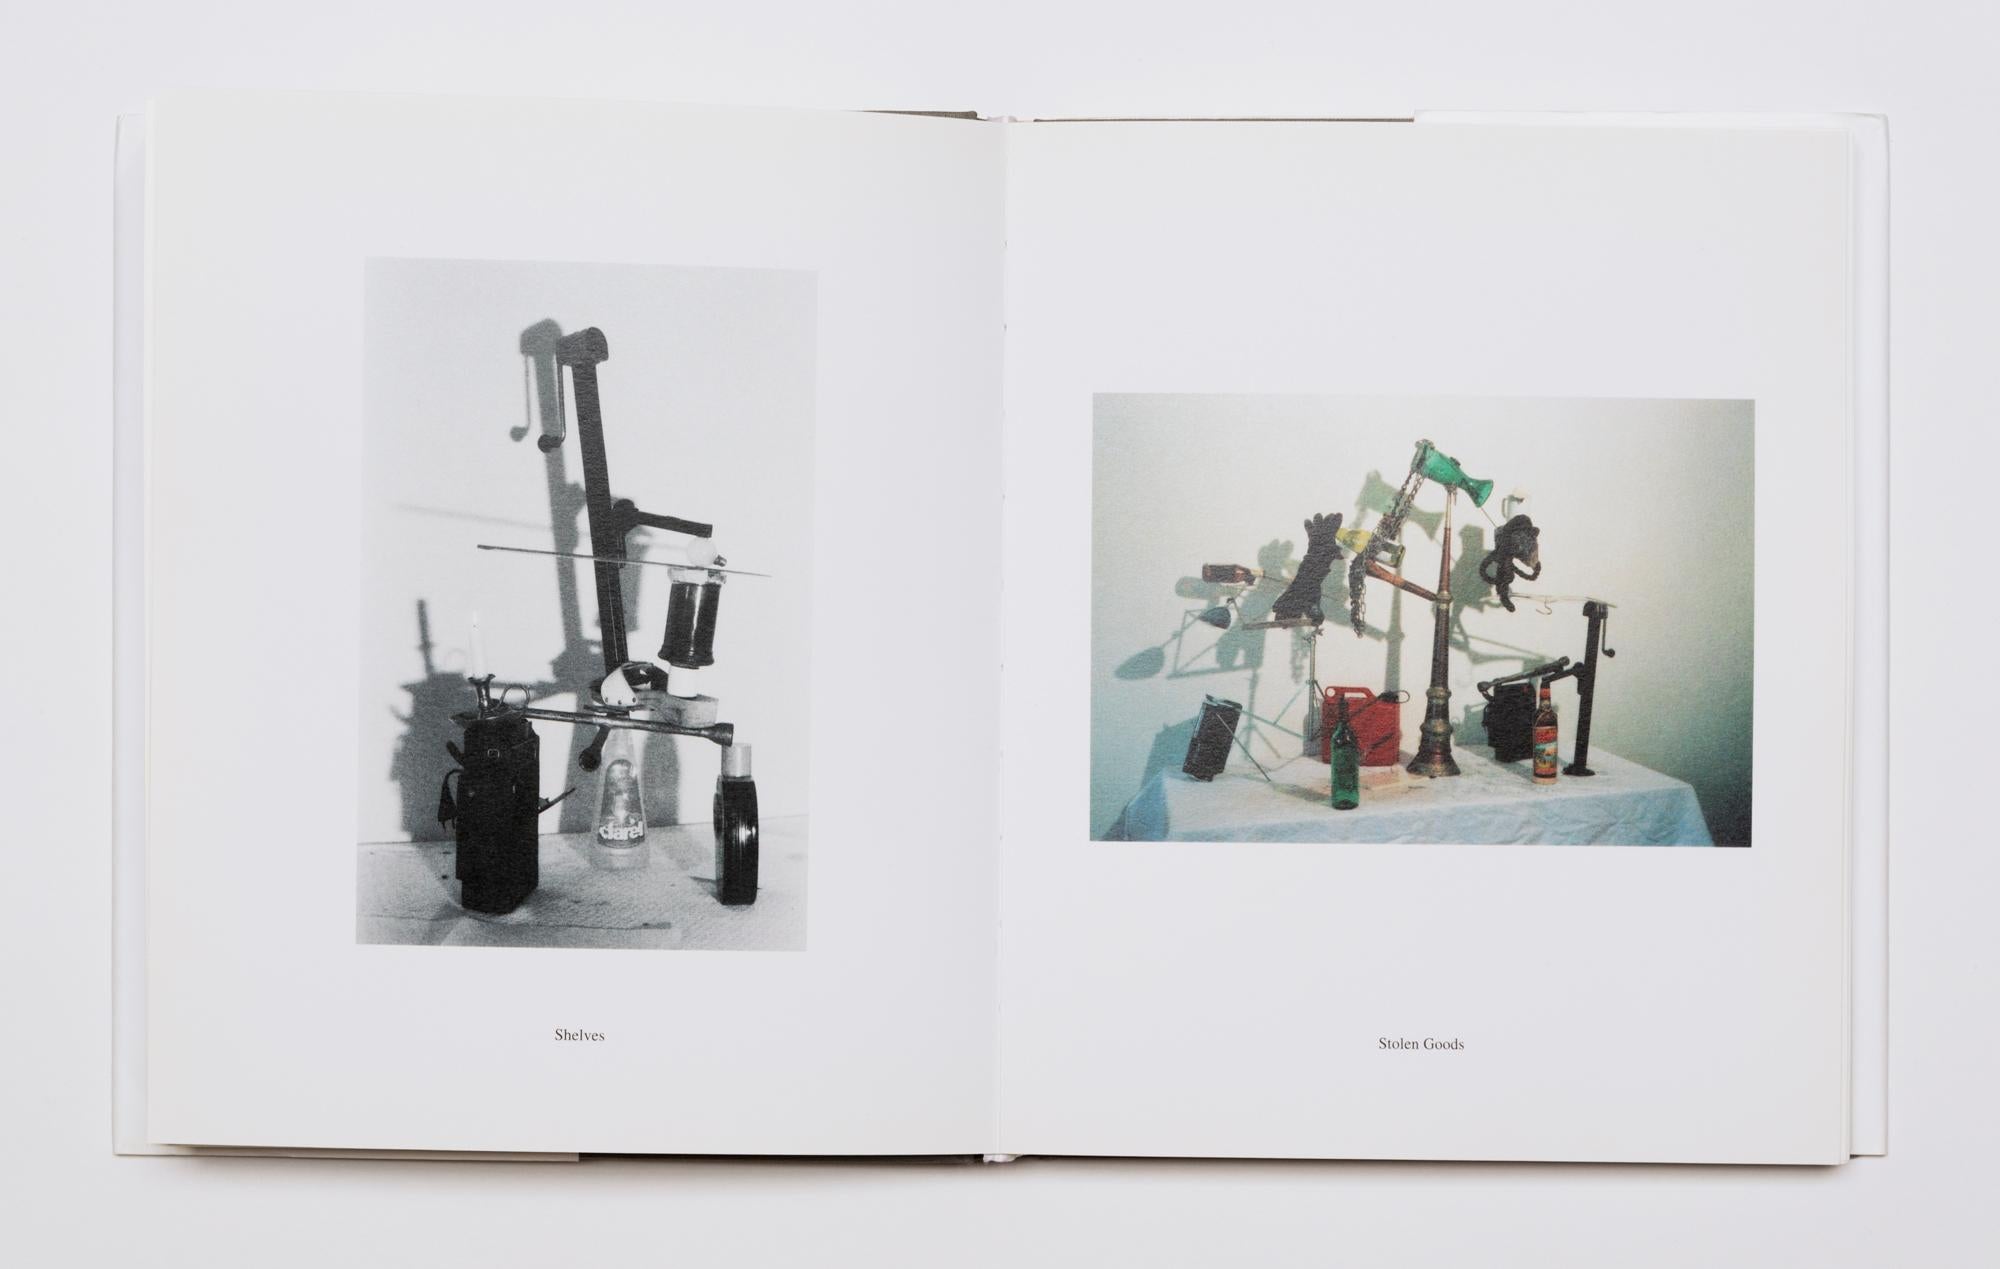 Peter Fischli / David Weiss 
Équilibres
1984-85/2006
Livre en édition limitée avec photographie dans un portfolio relié en lin
Photographie : 12 1/4 x 9 1/8 pouces ; 31 x 23 cm
Livre : 9 1/4 x 7 3/4 x 7/8 pouces ; 24 x 20 x 2 cm
Portefeuille : 15 x